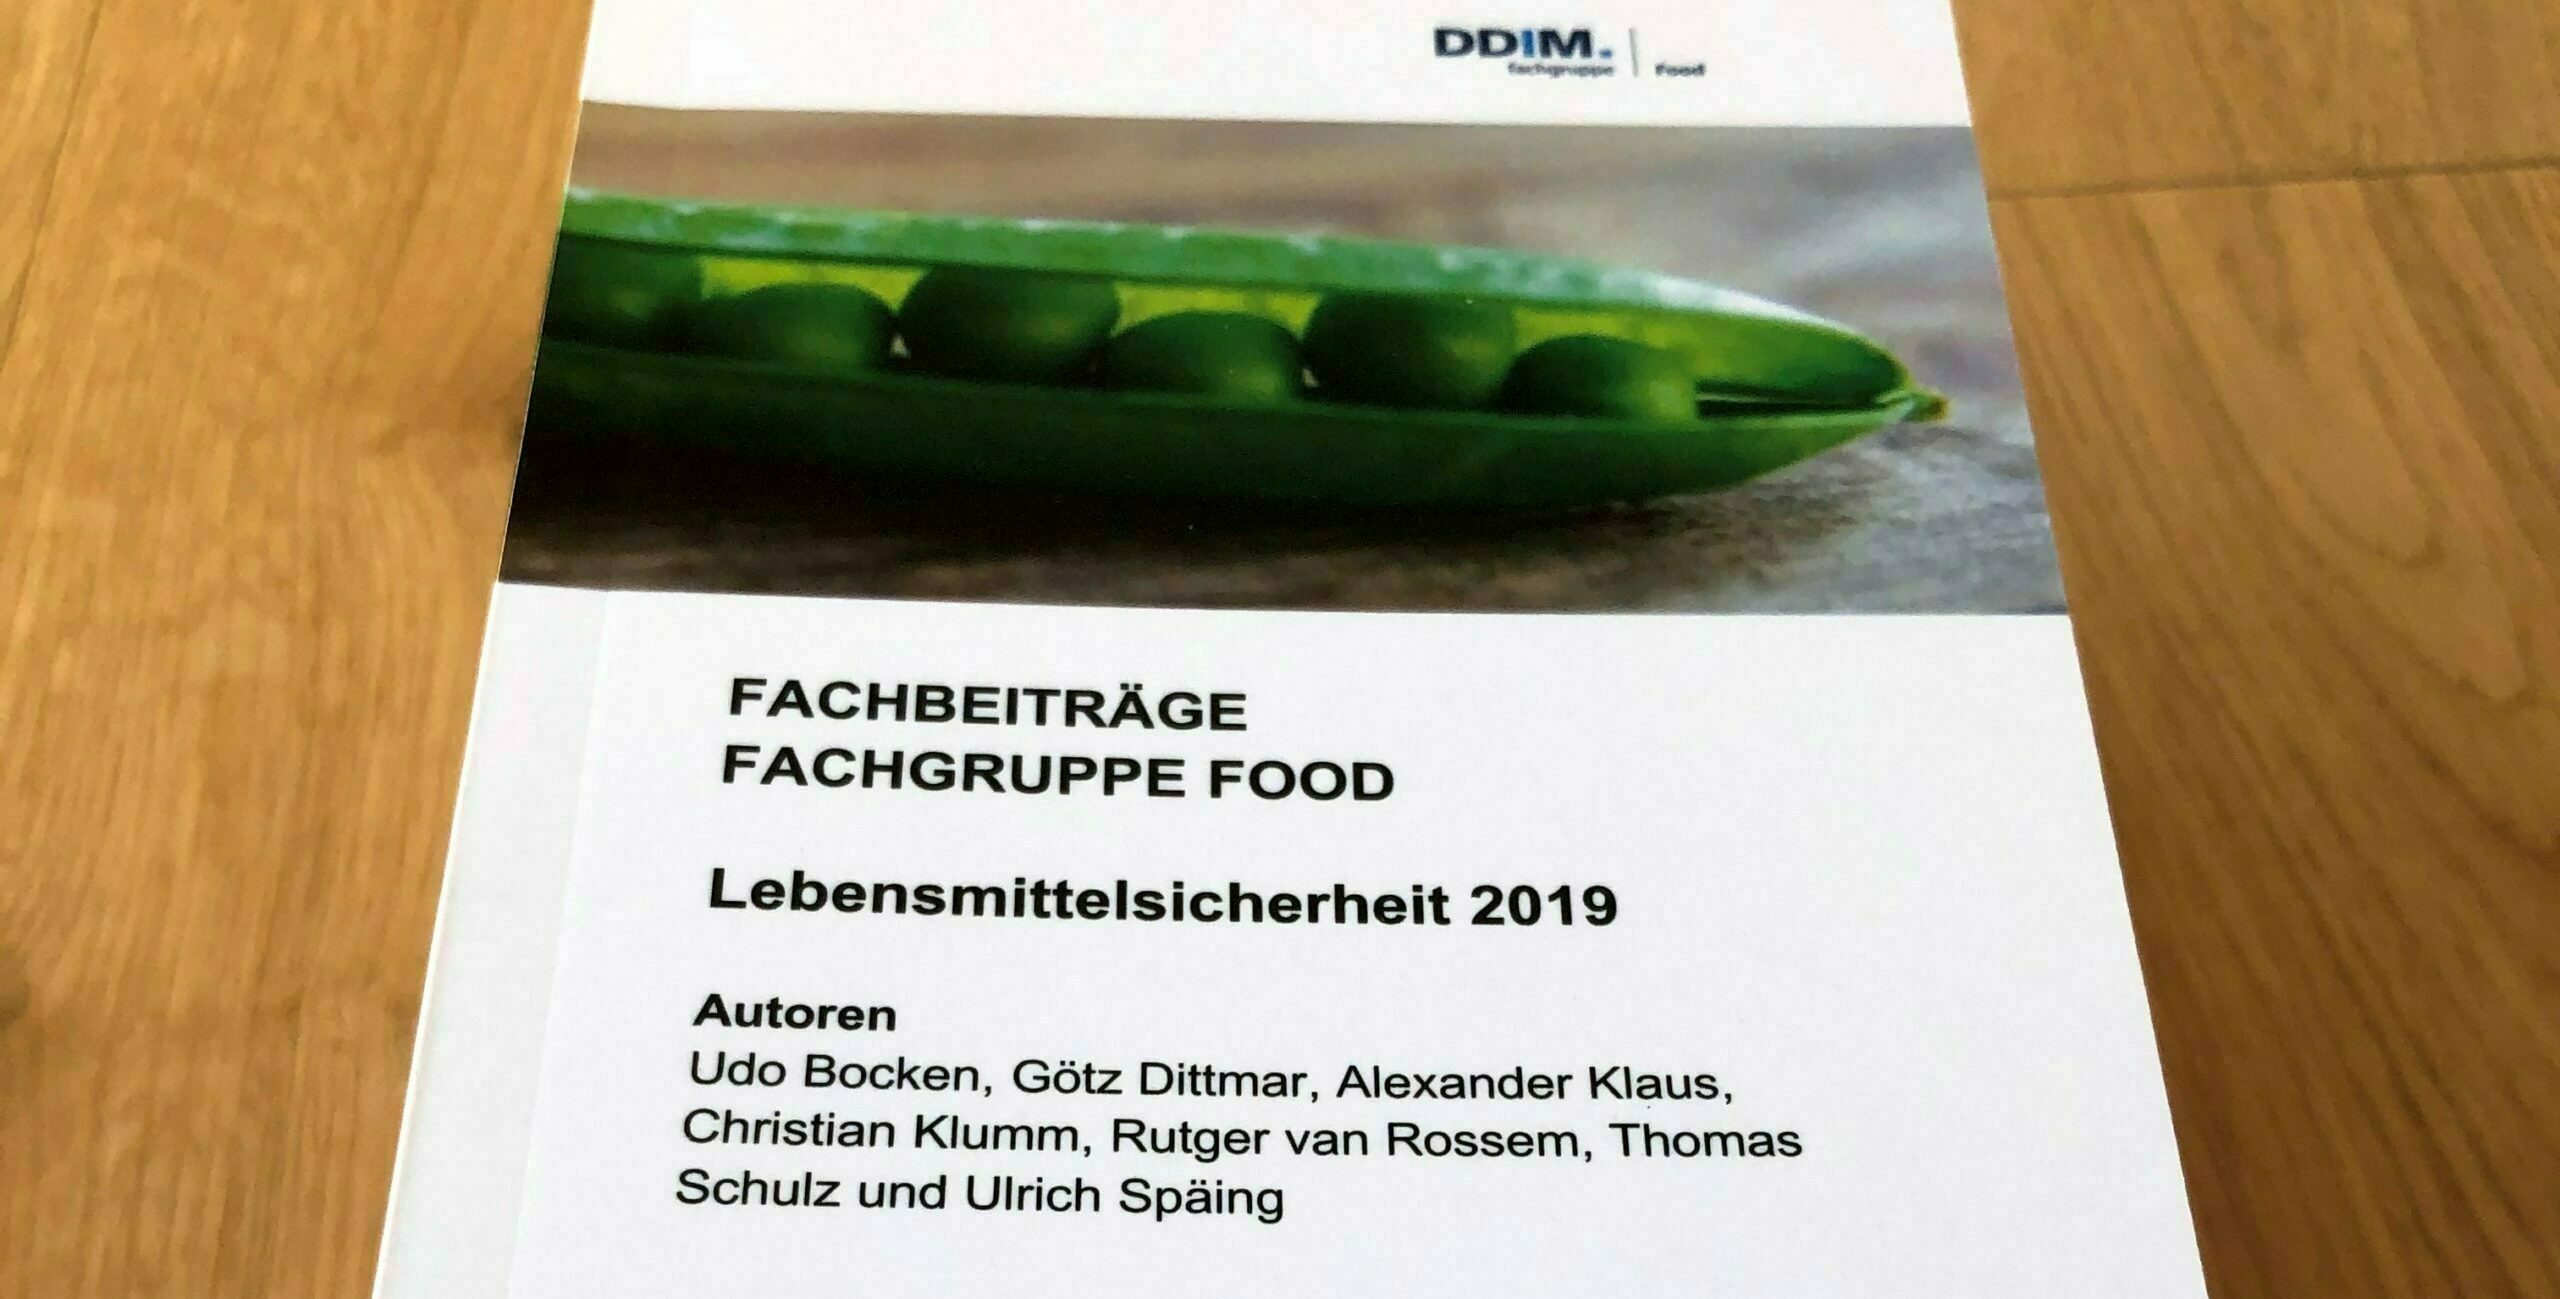 Lebensmittelsicherheit Fachgruppe Food der DDIM in der Lebensmittelindustrie - RAU | INTERIM Management